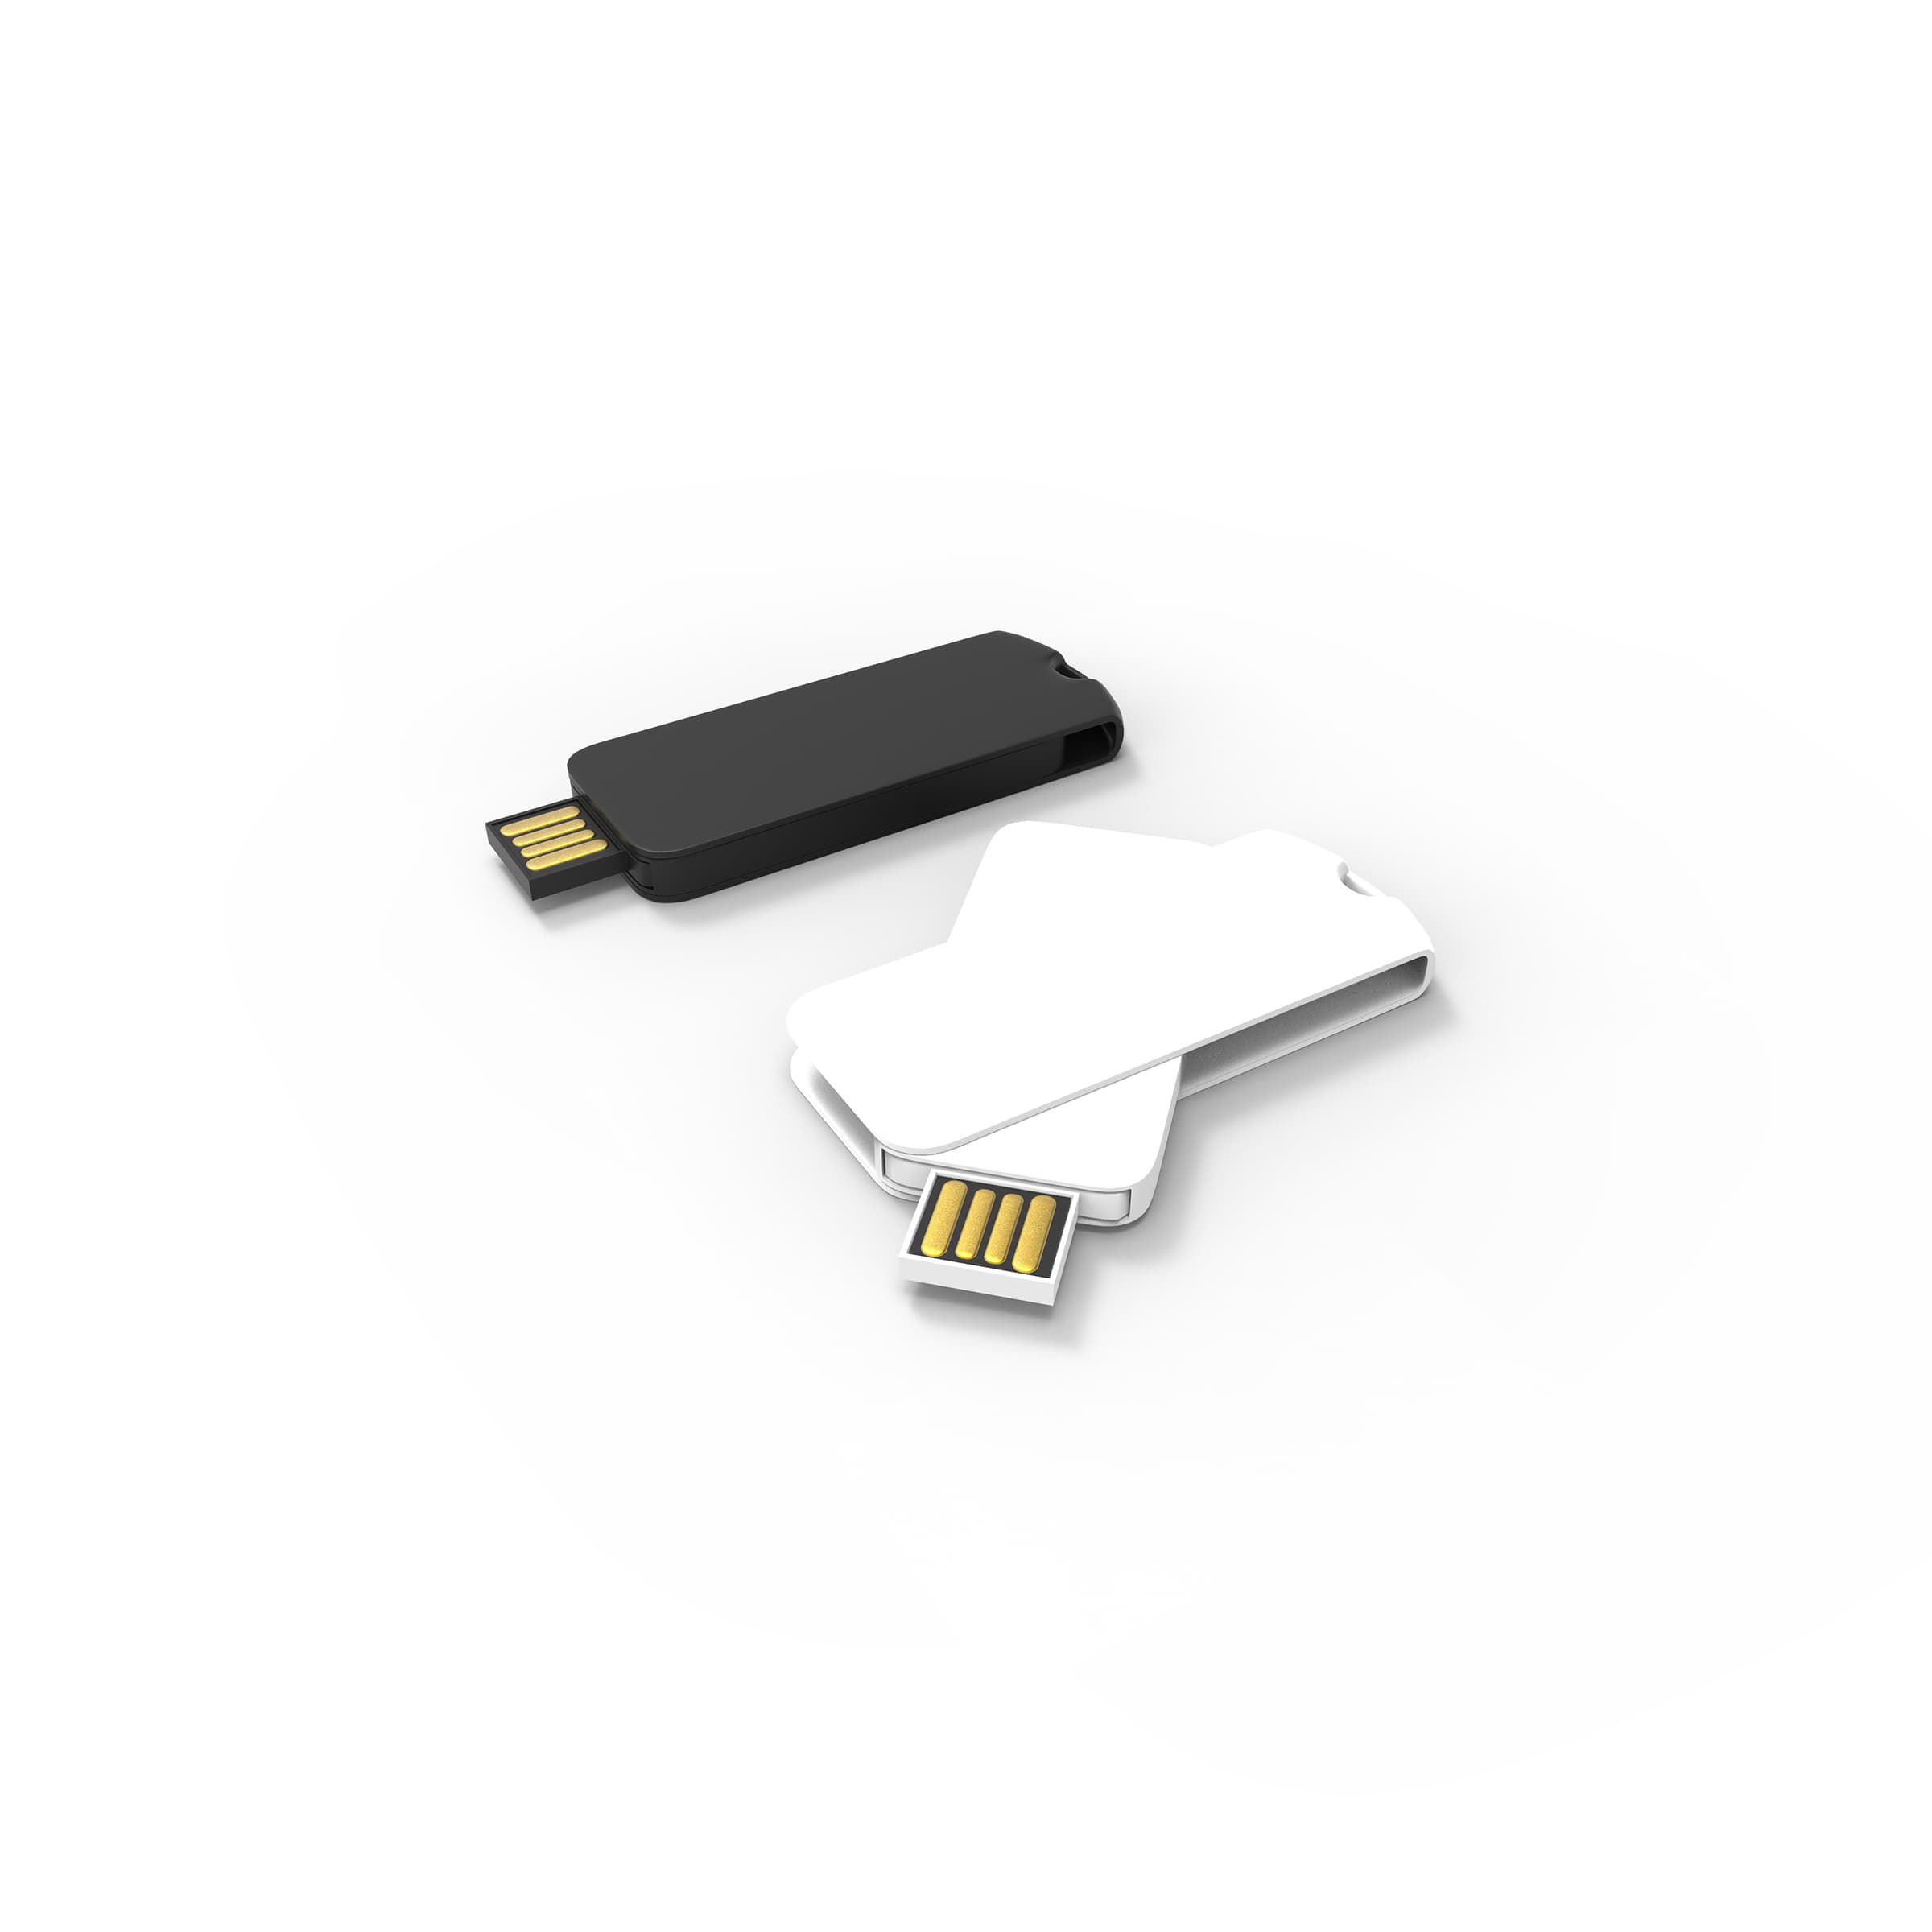 USB-Stick "Twister"